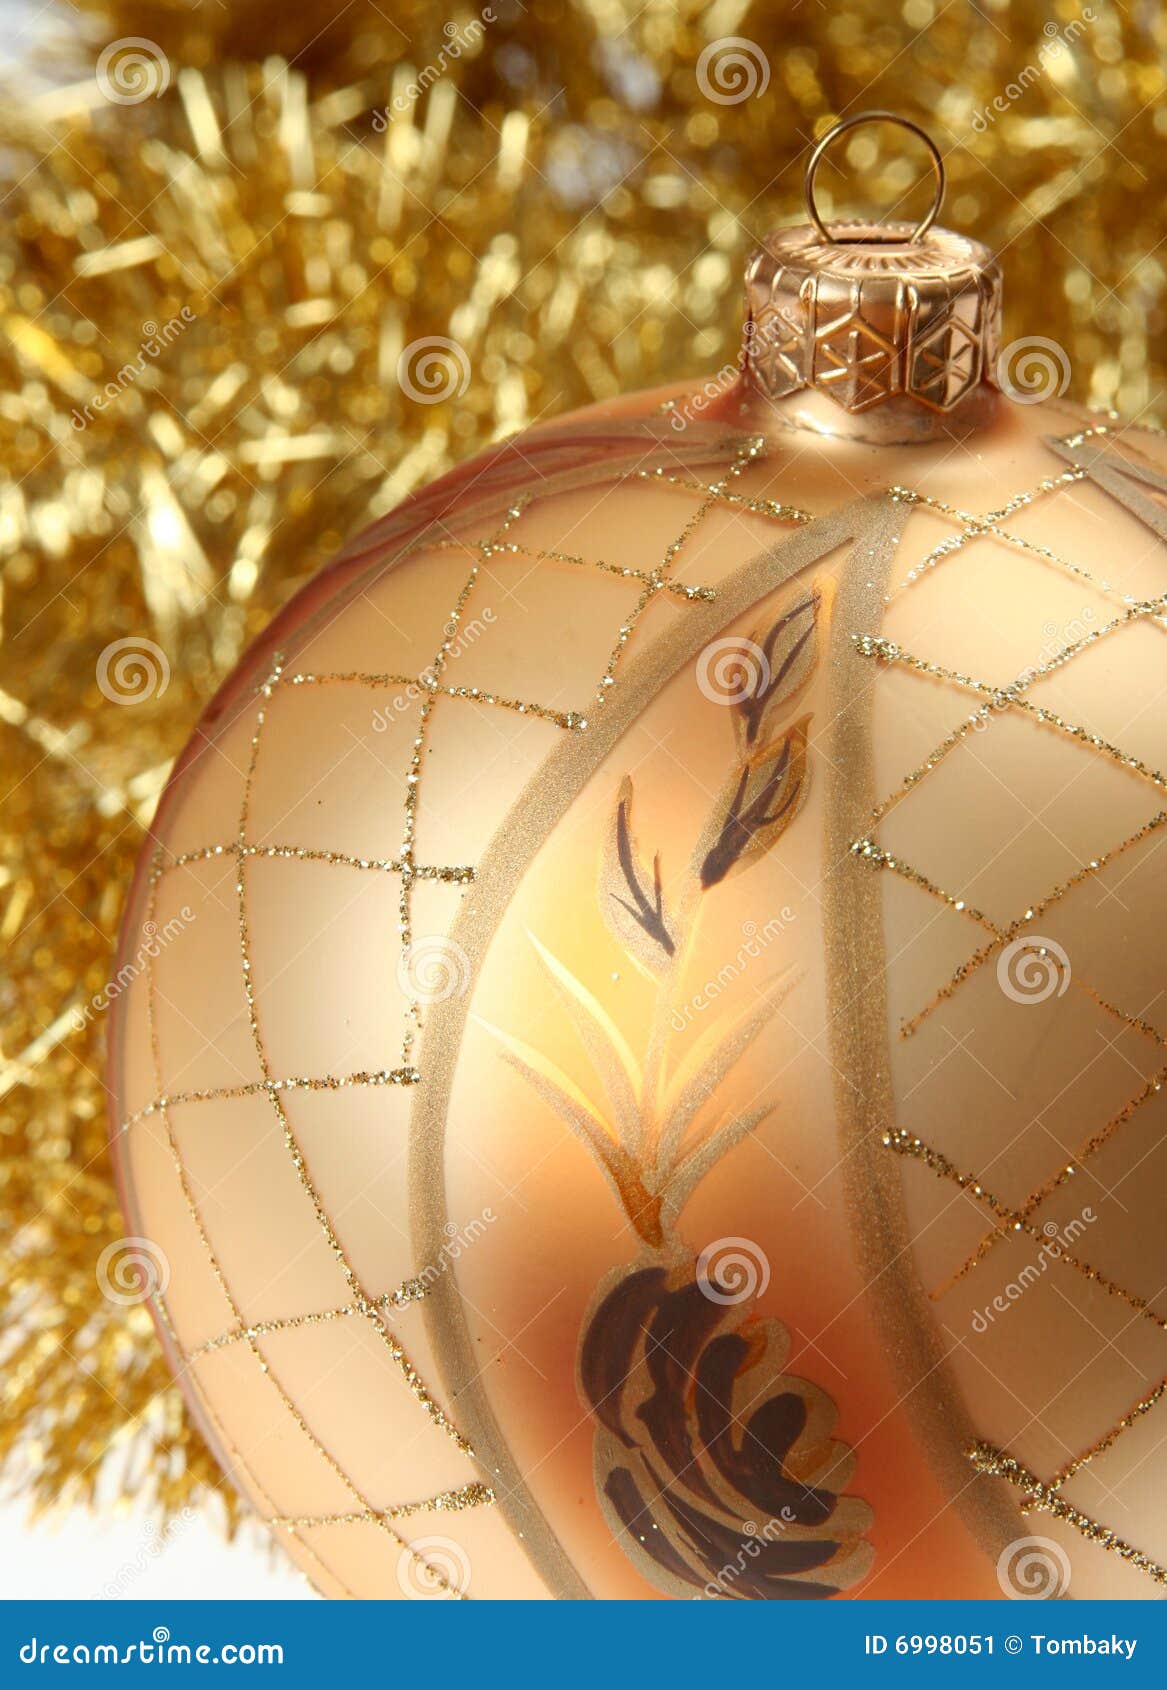 Golden Christmas Background Stock Image - Image of ribbon, background ...